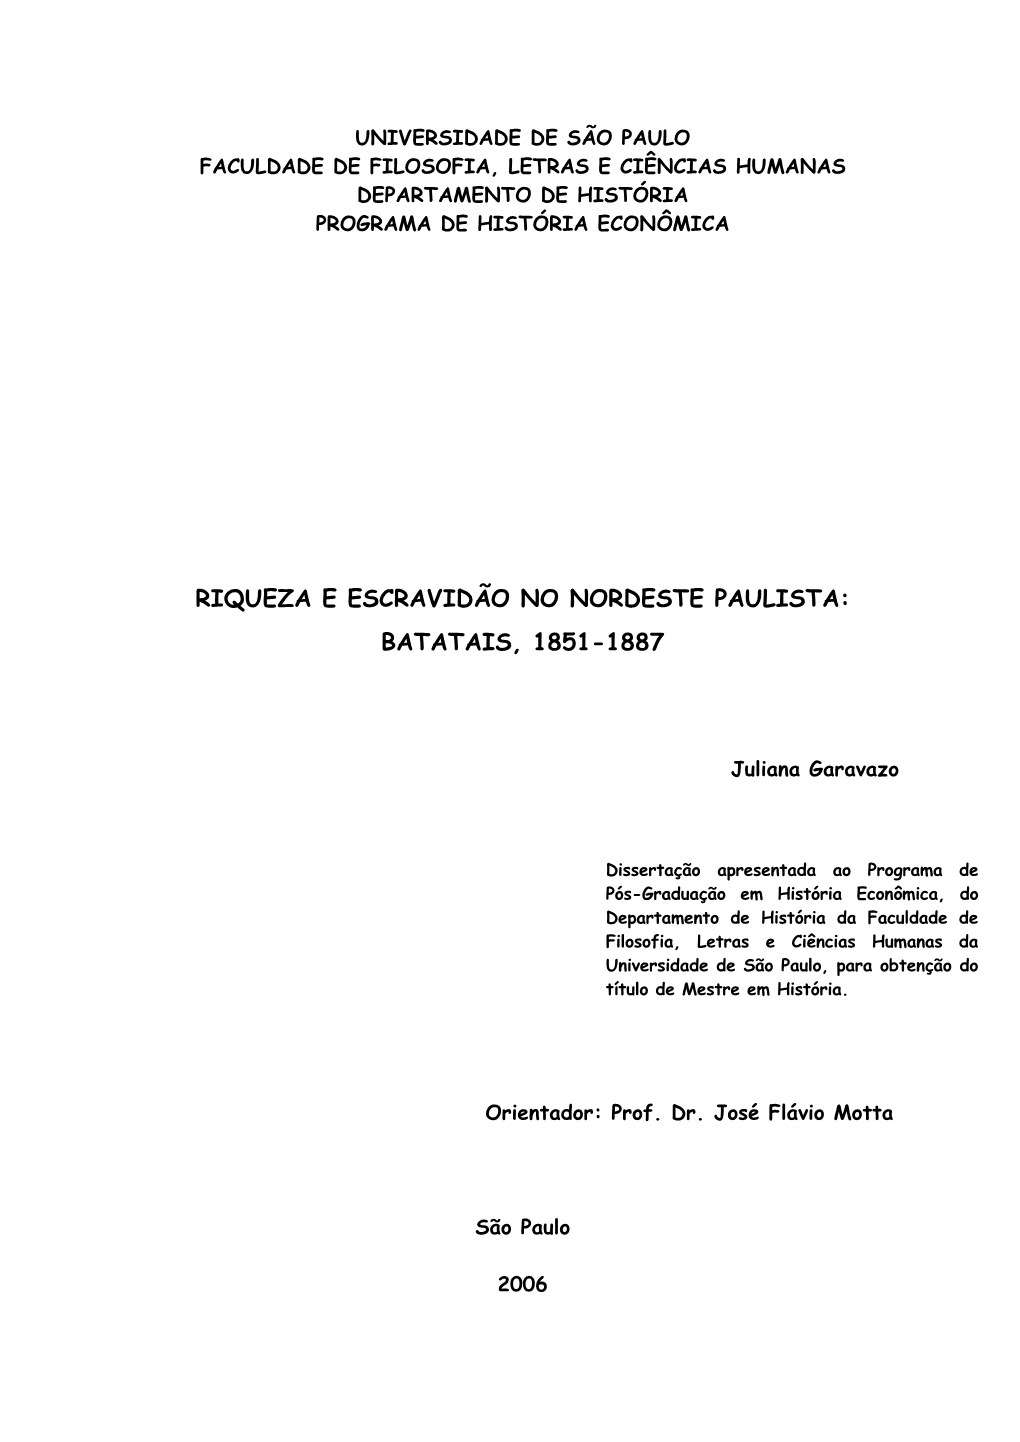 Riqueza E Escravidão No Nordeste Paulista: Batatais, 1851-1887